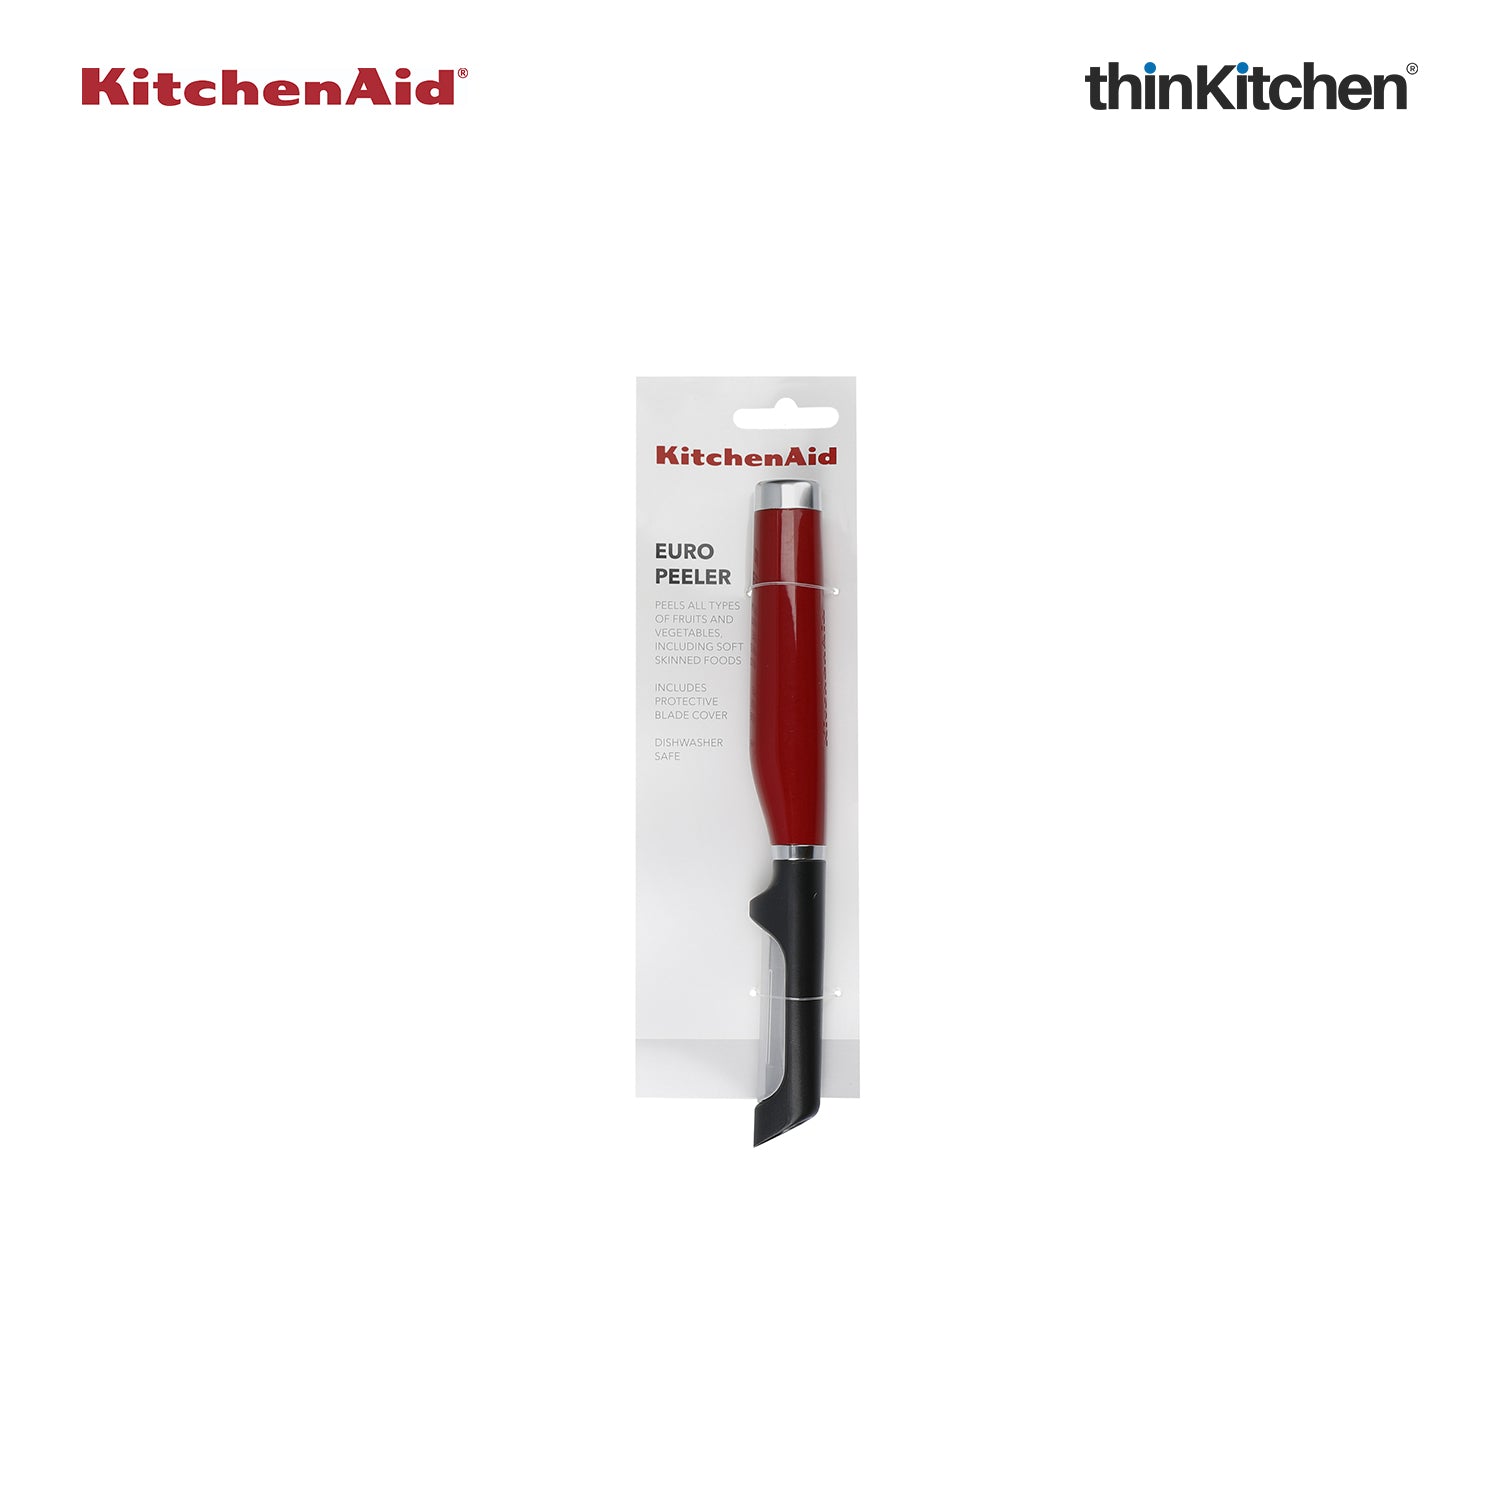 KitchenAid Peeler Euro Soft Touch Black